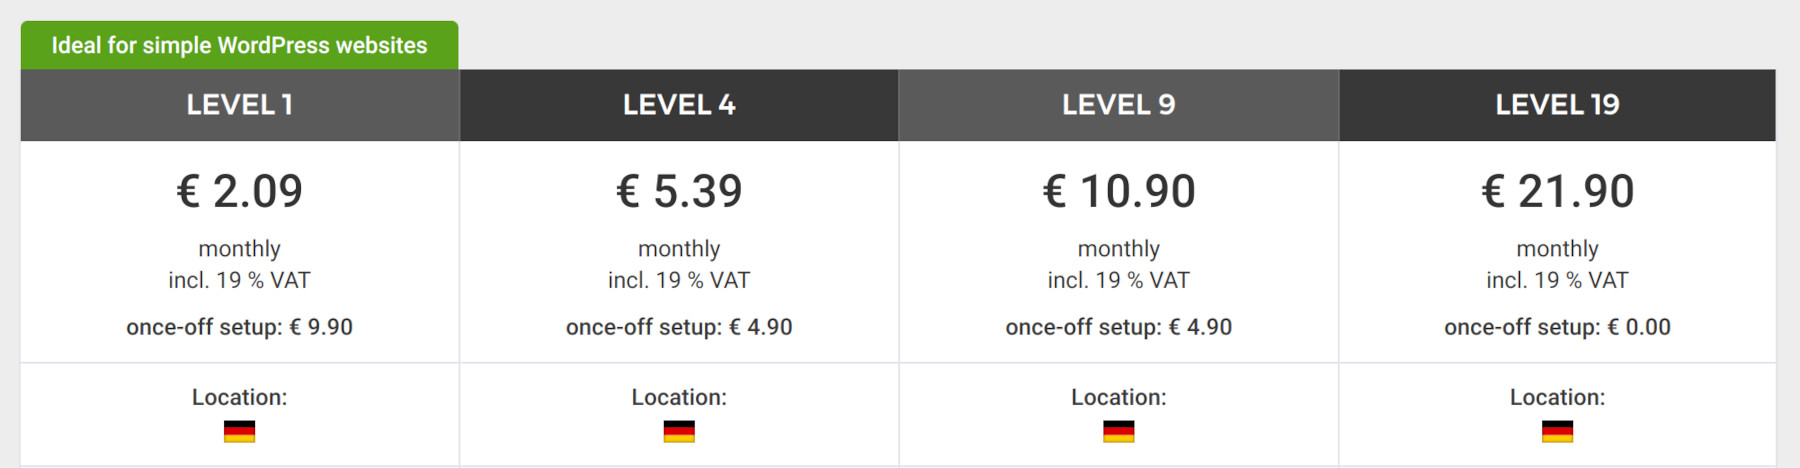 Hetzner's web hosting prices